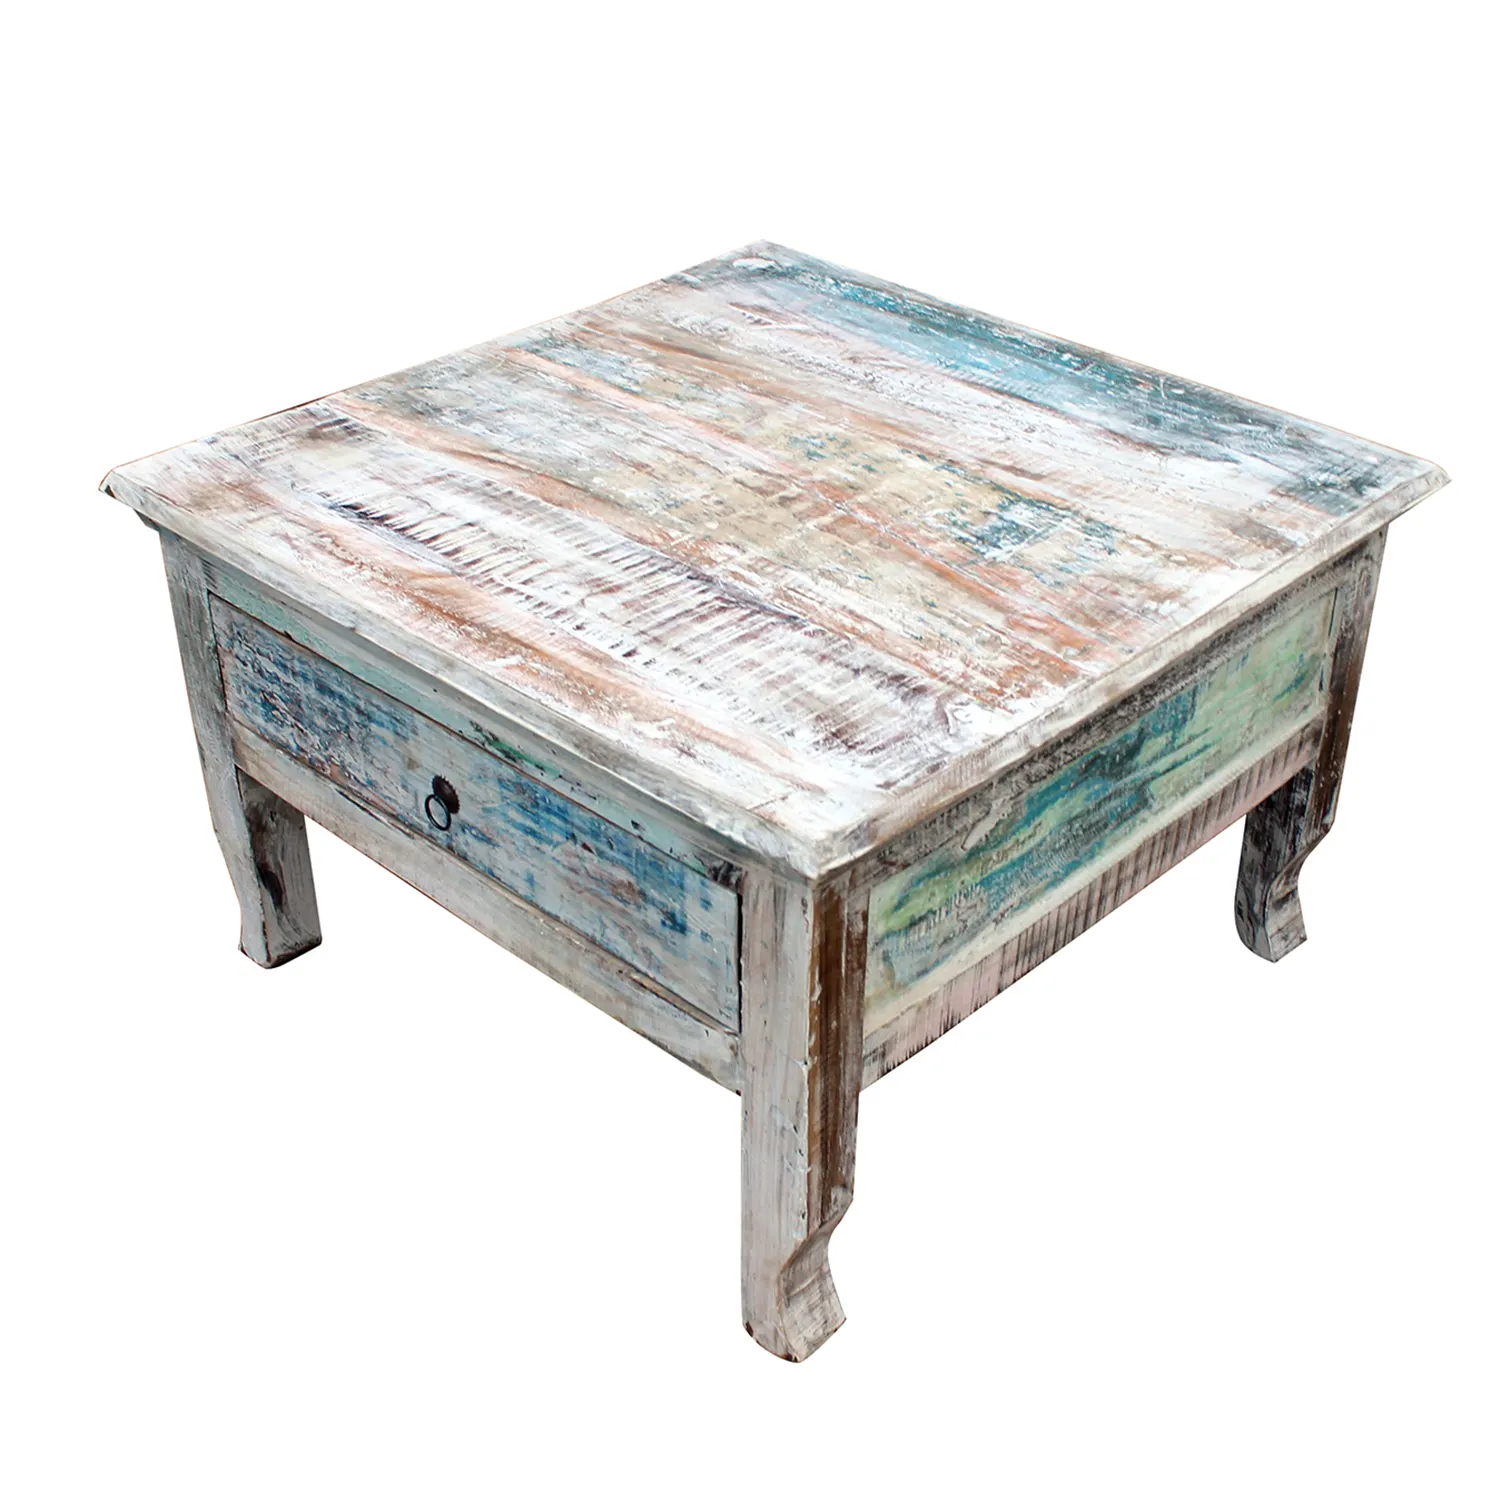 Mesa de centro cuadrada de madera envejecida, mueble indio de madera desgastada, color blanco desgastado, 1 cajón